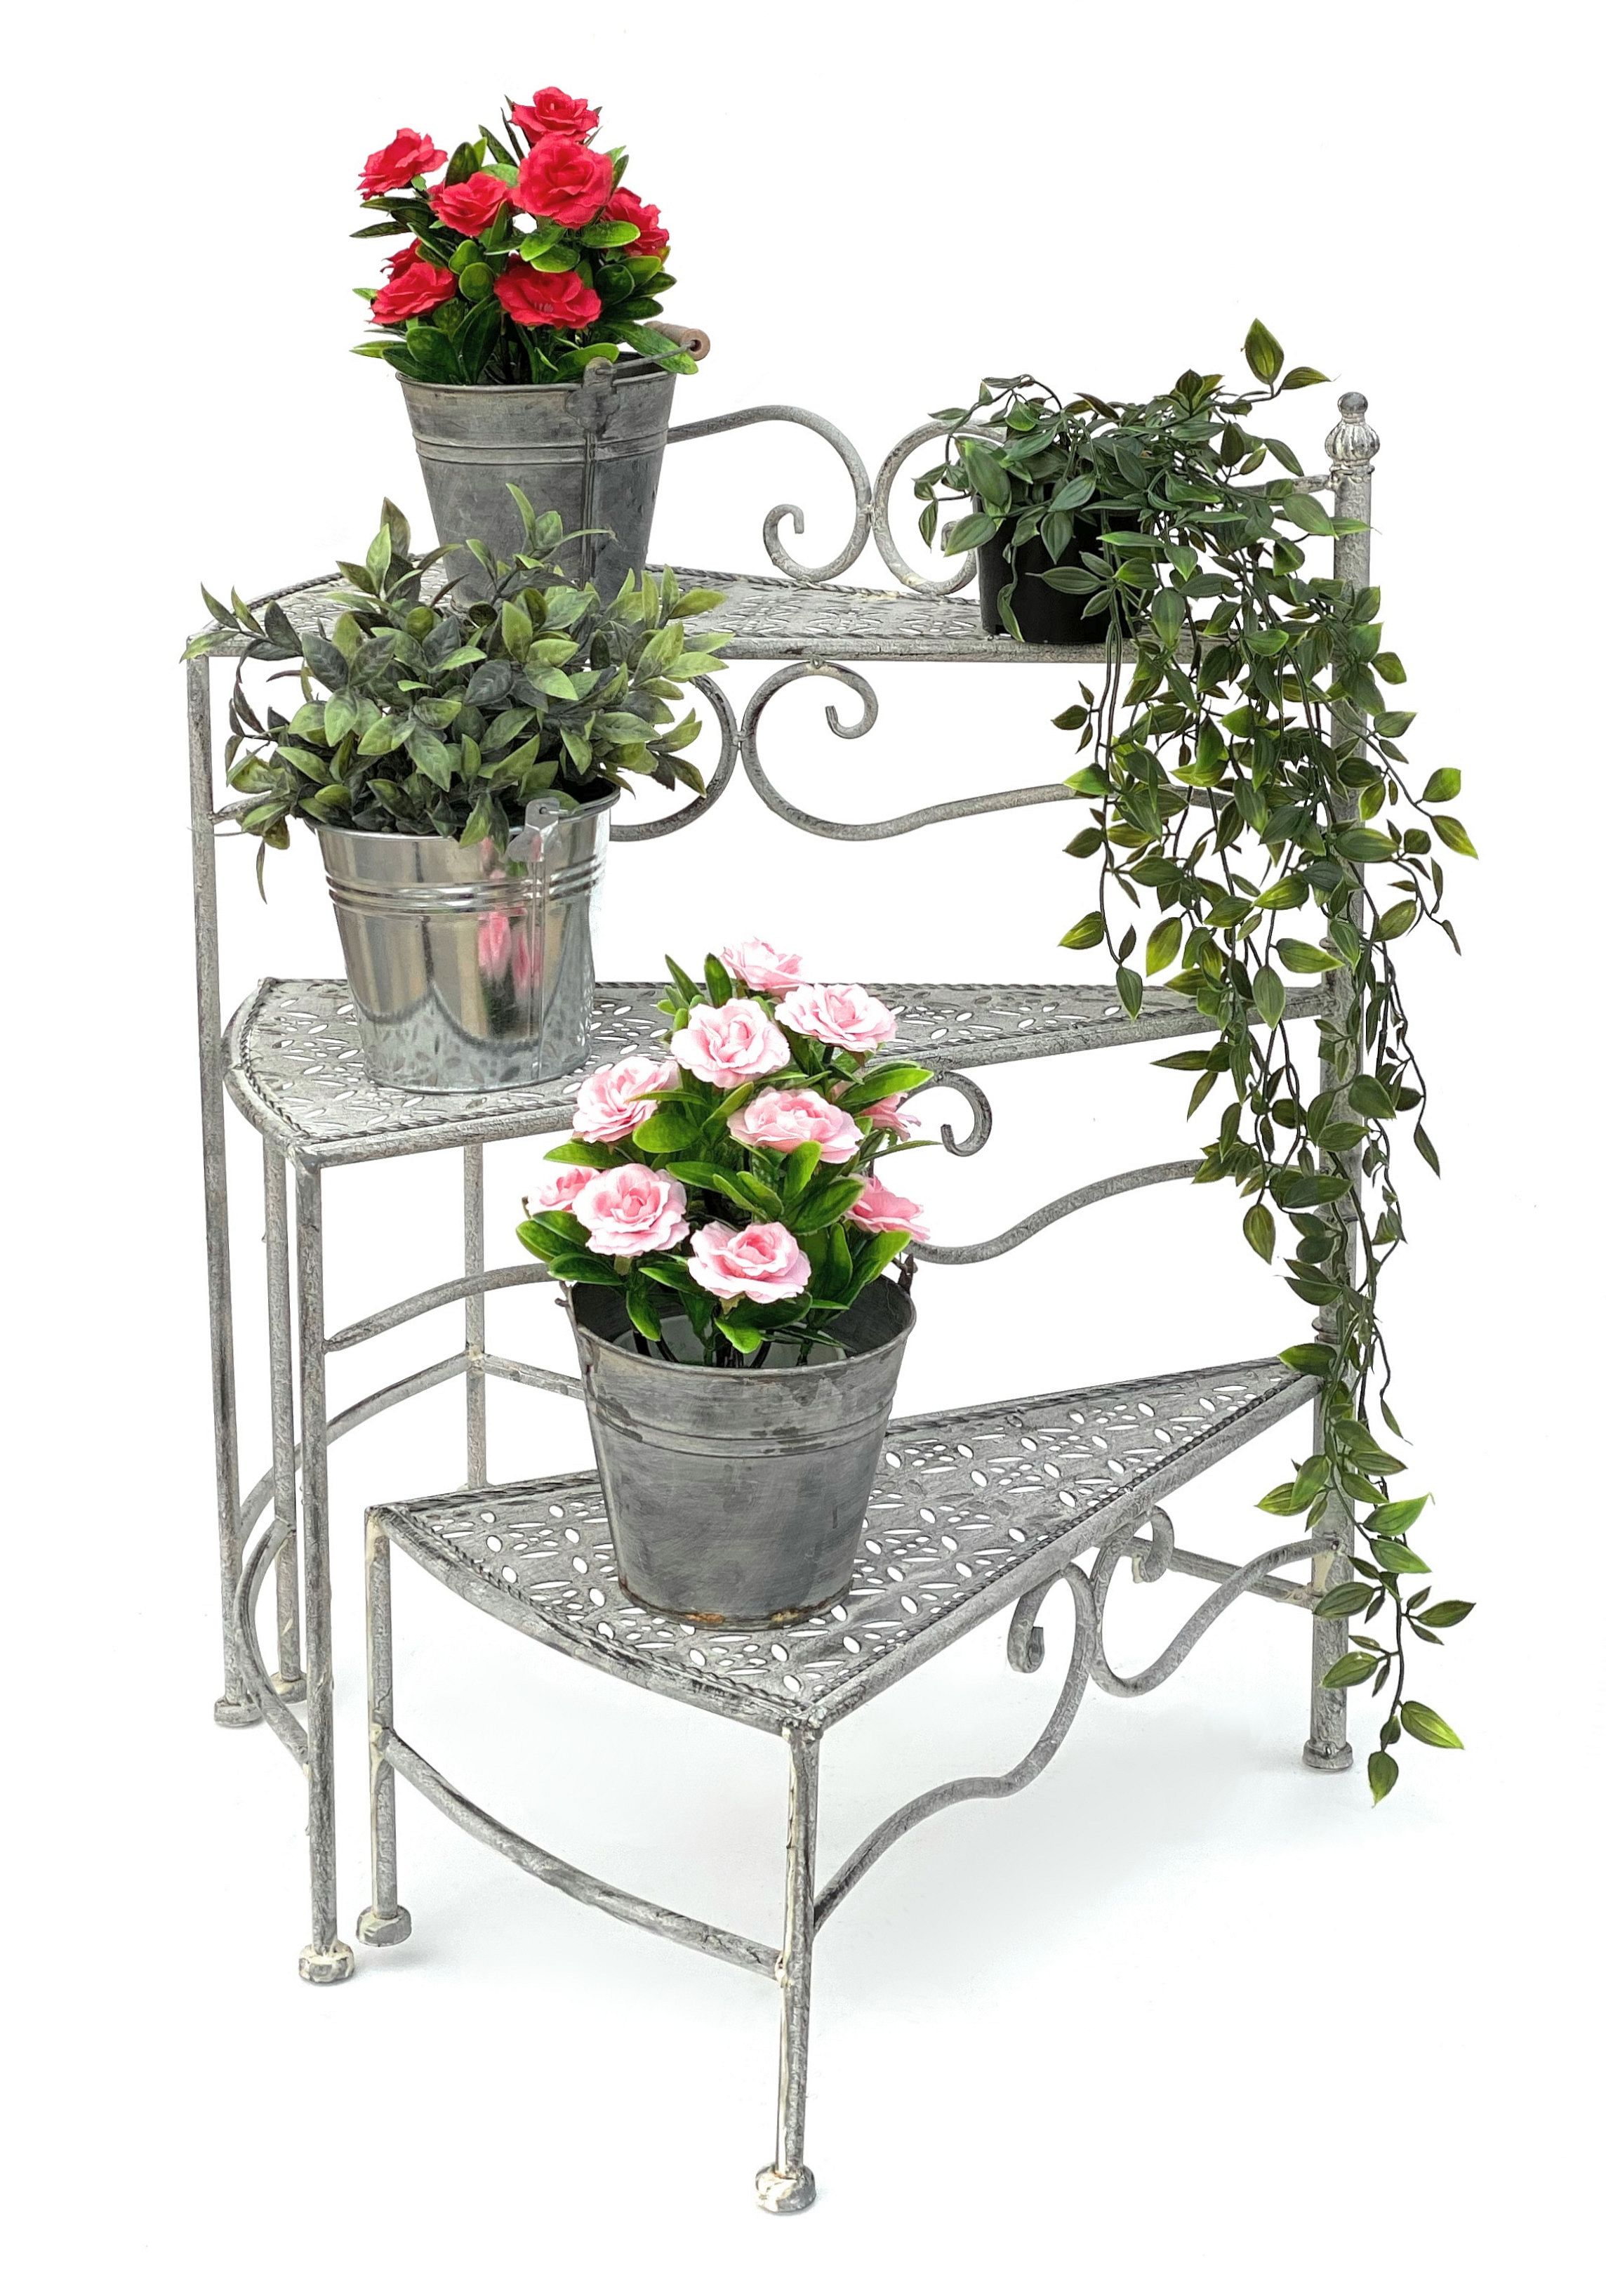 DanDiBo Blumentreppe Innen Metall Weiß Grau 55 cm Blumenständer mit 3  Ablagen 96125 Blumenständer Blumensäule Pflanzenständer Balkon  Vintage-DanDiBo